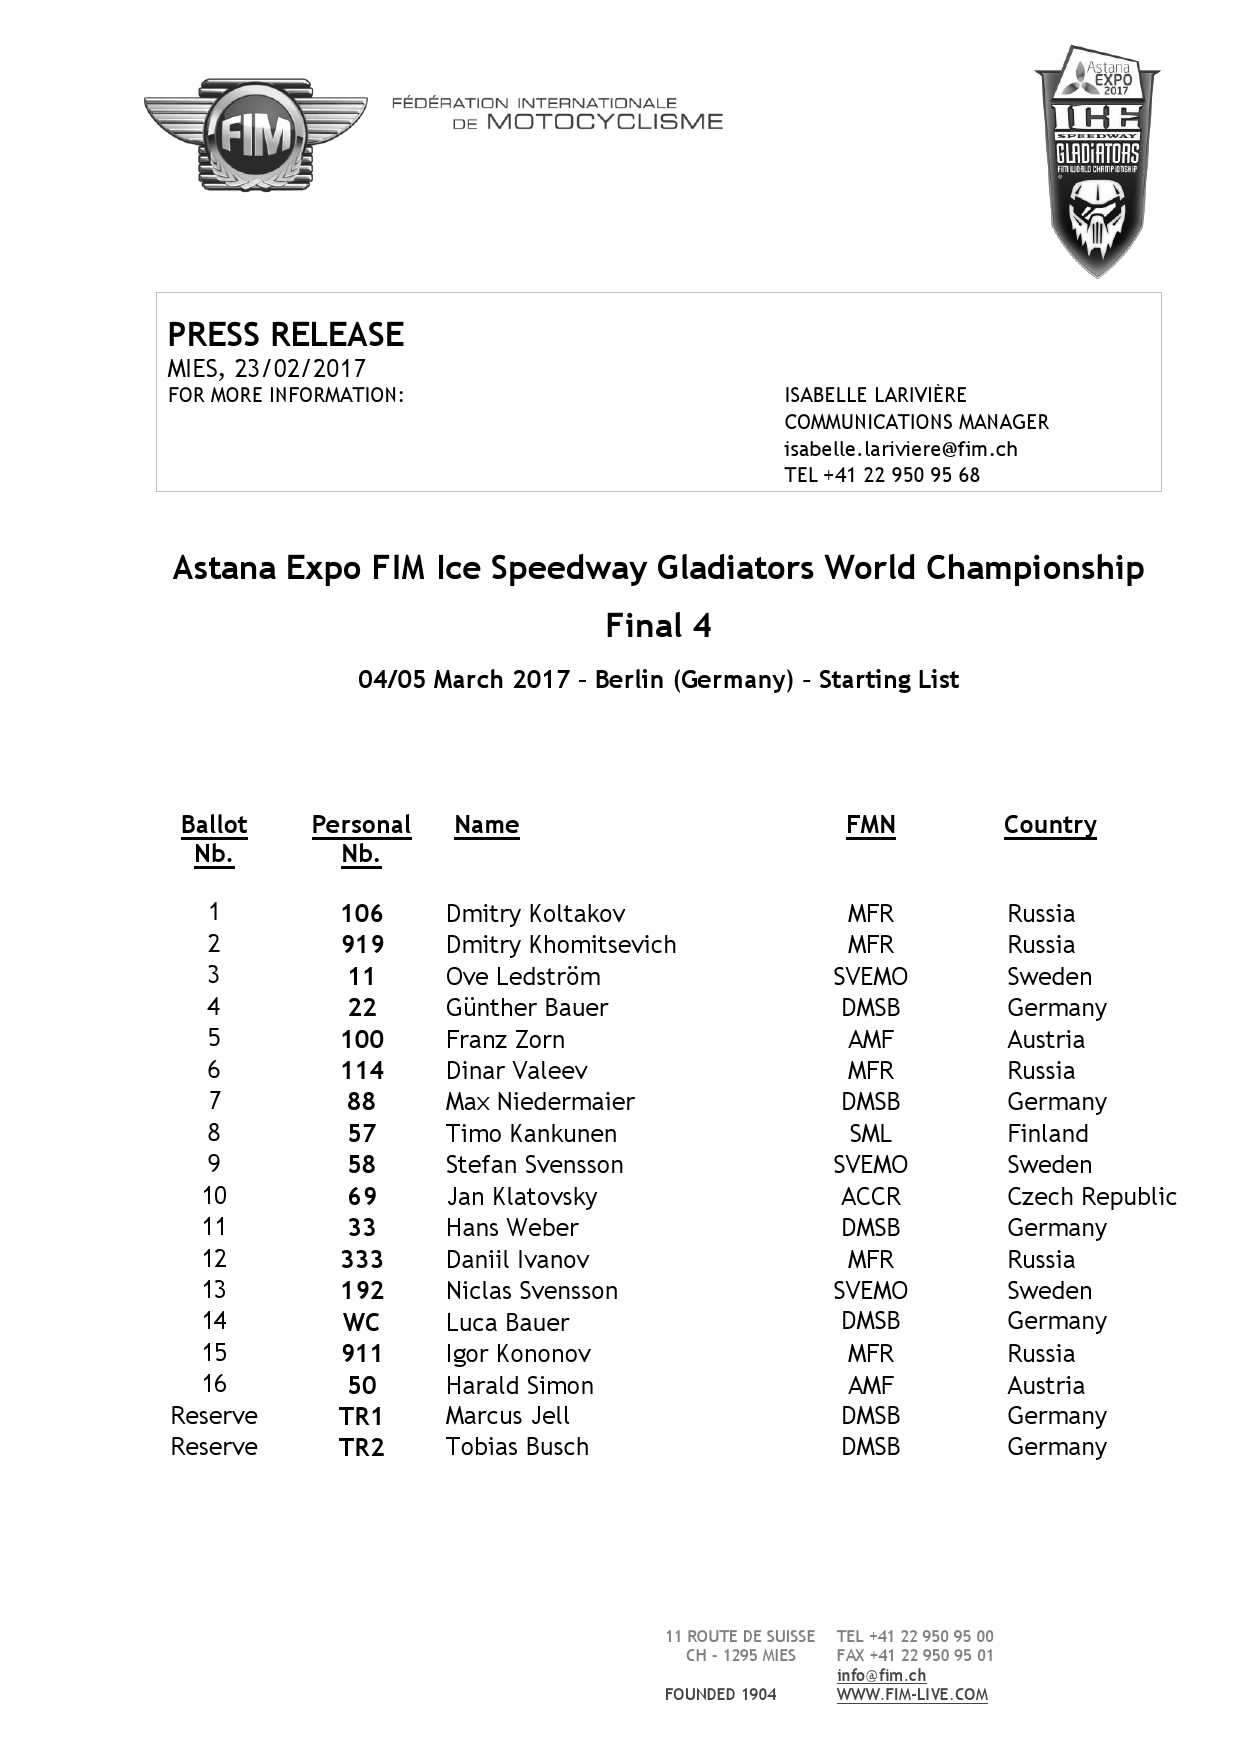 Официальный список участников 4-го этапа FIM Ice Speedway Gladiators в Берлине